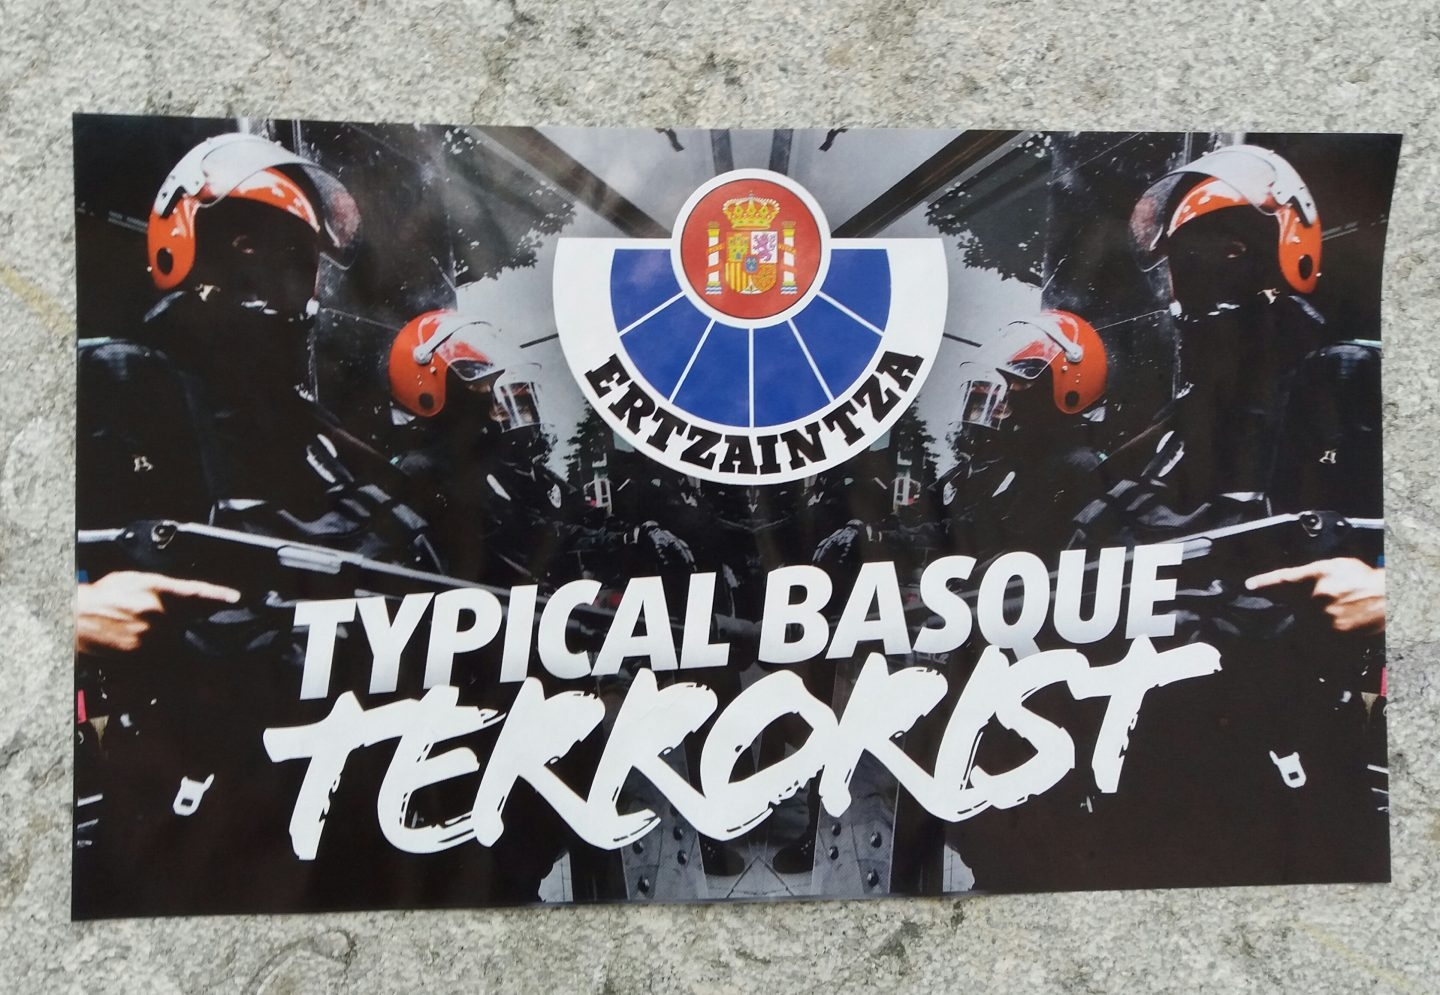 Ertzaintza, 'Typical Basque Terrorist'